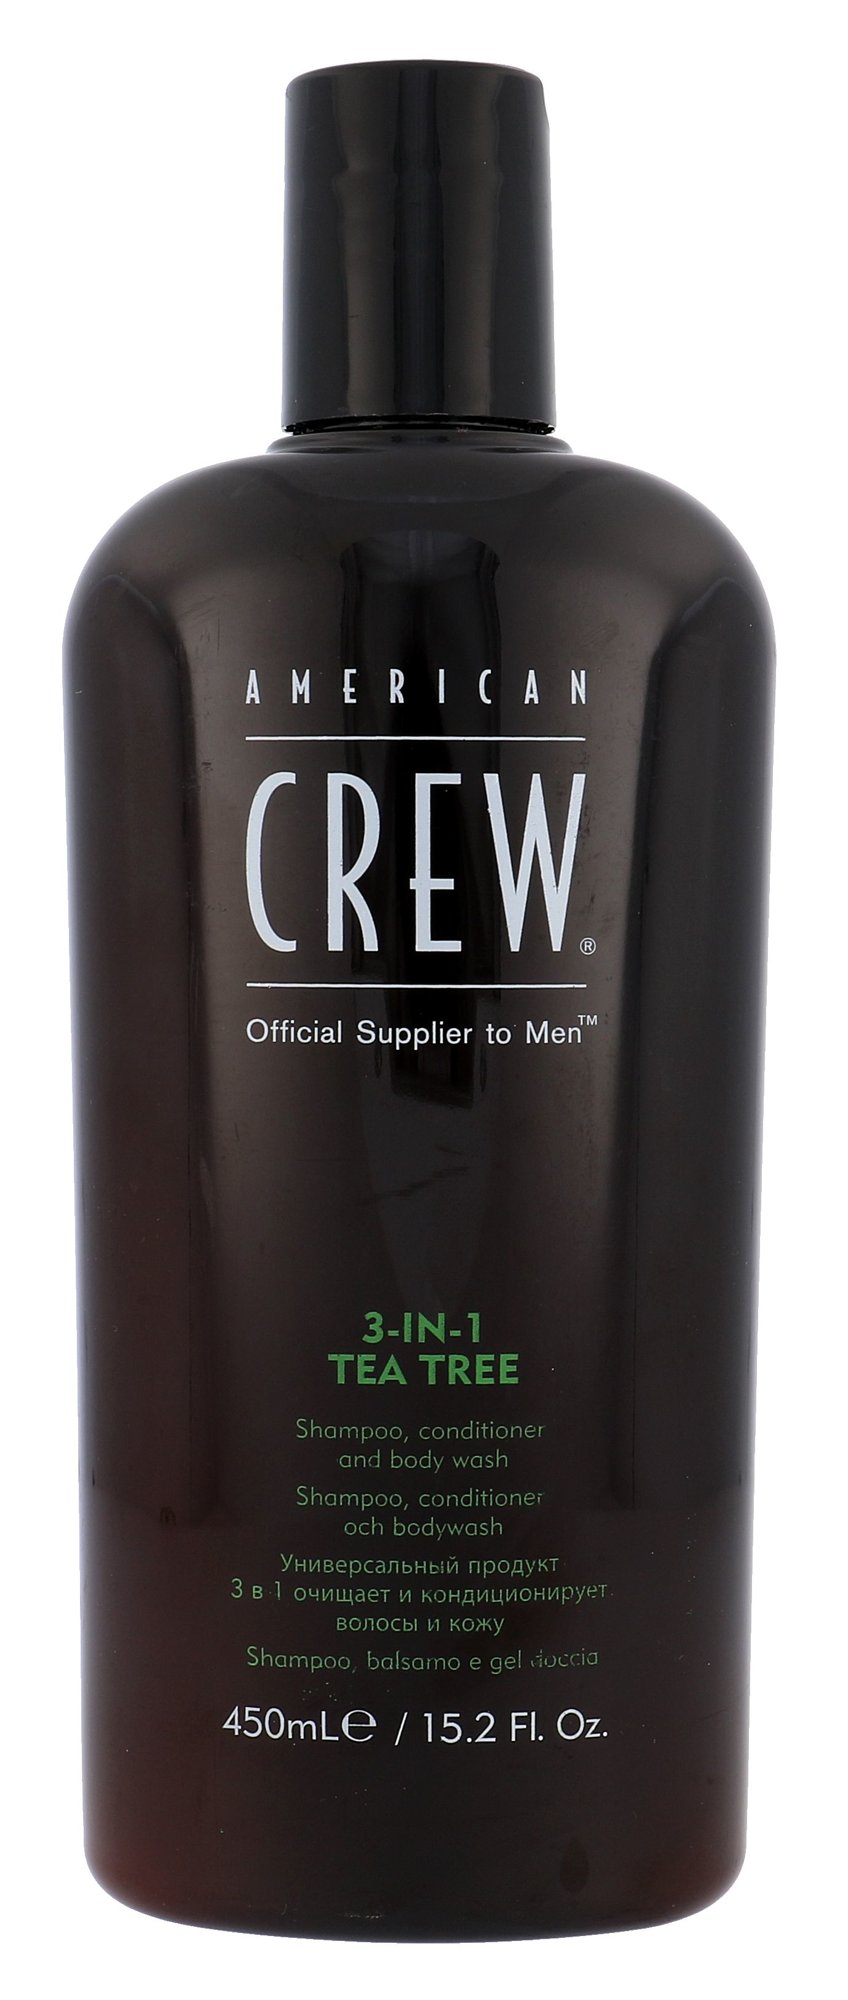 American Crew 3-IN-1 Shampoo, Conditioner & Body Wash 450ml šampūnas